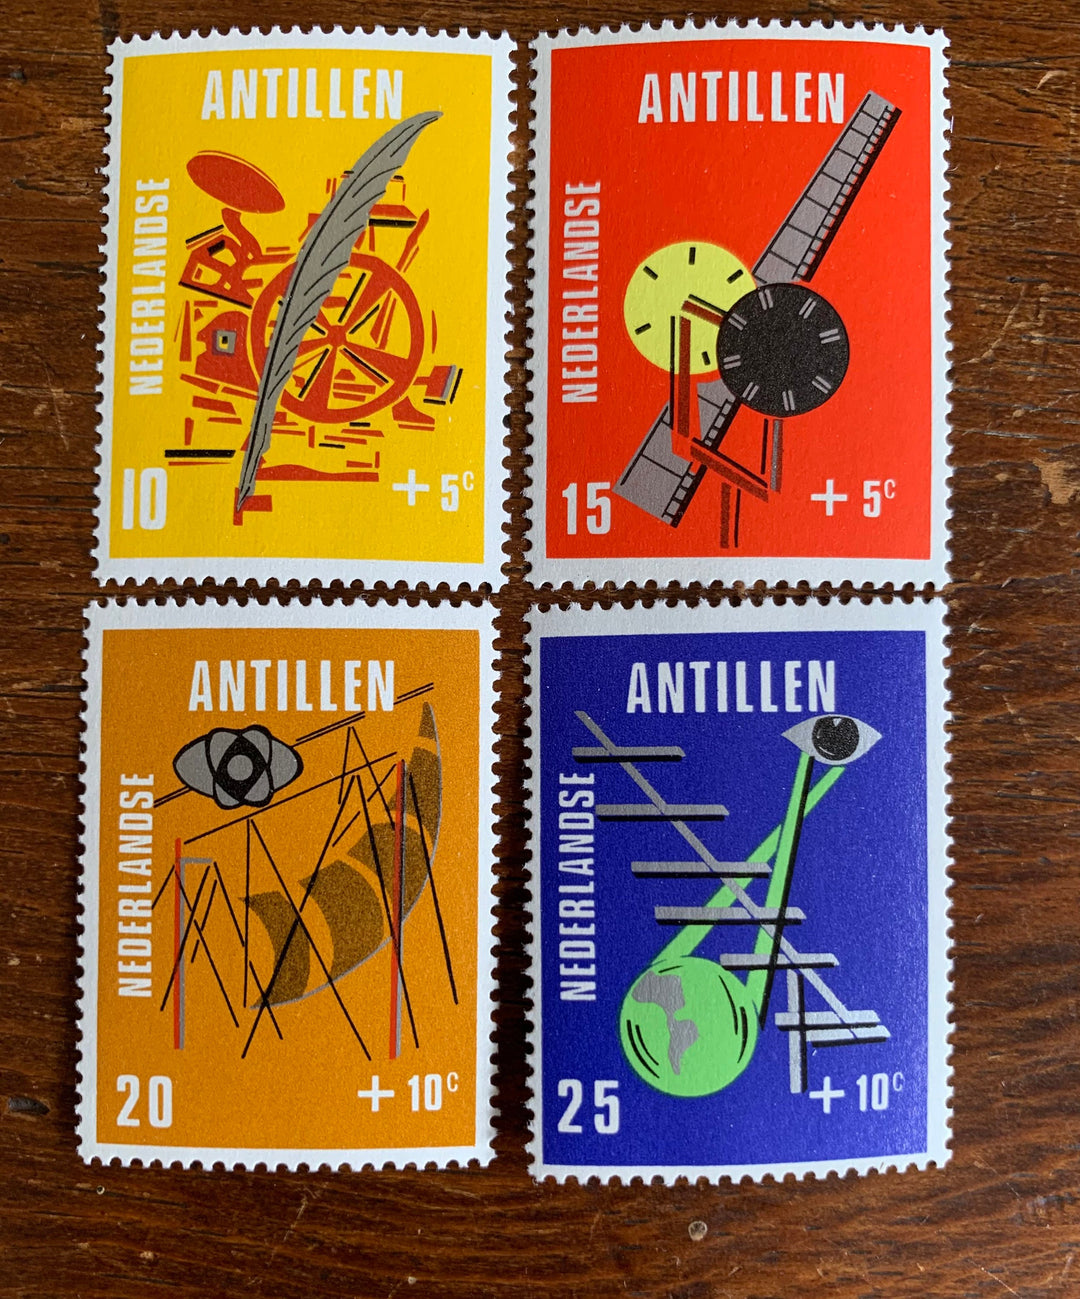 Netherlands Antilles - Original Vintage Postage Stamps - 1970 Means of Popular Education